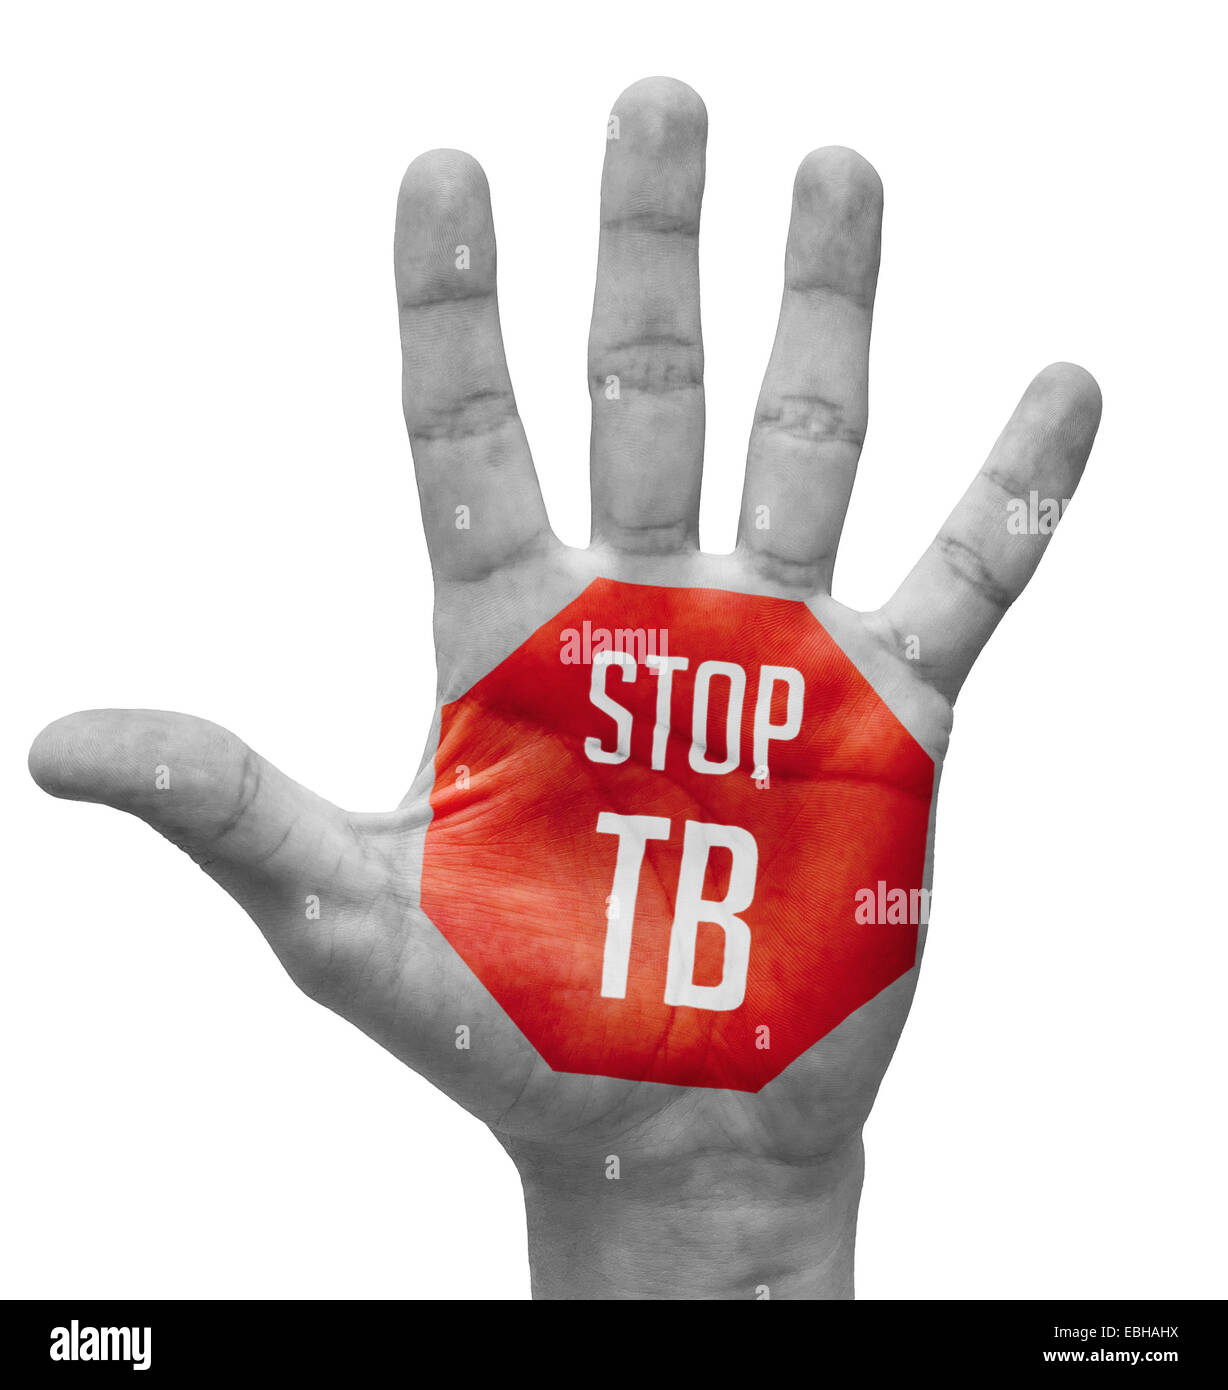 Stoppschild TB gemalt, offene Hand erhoben, Isolated on White Background. Stockfoto